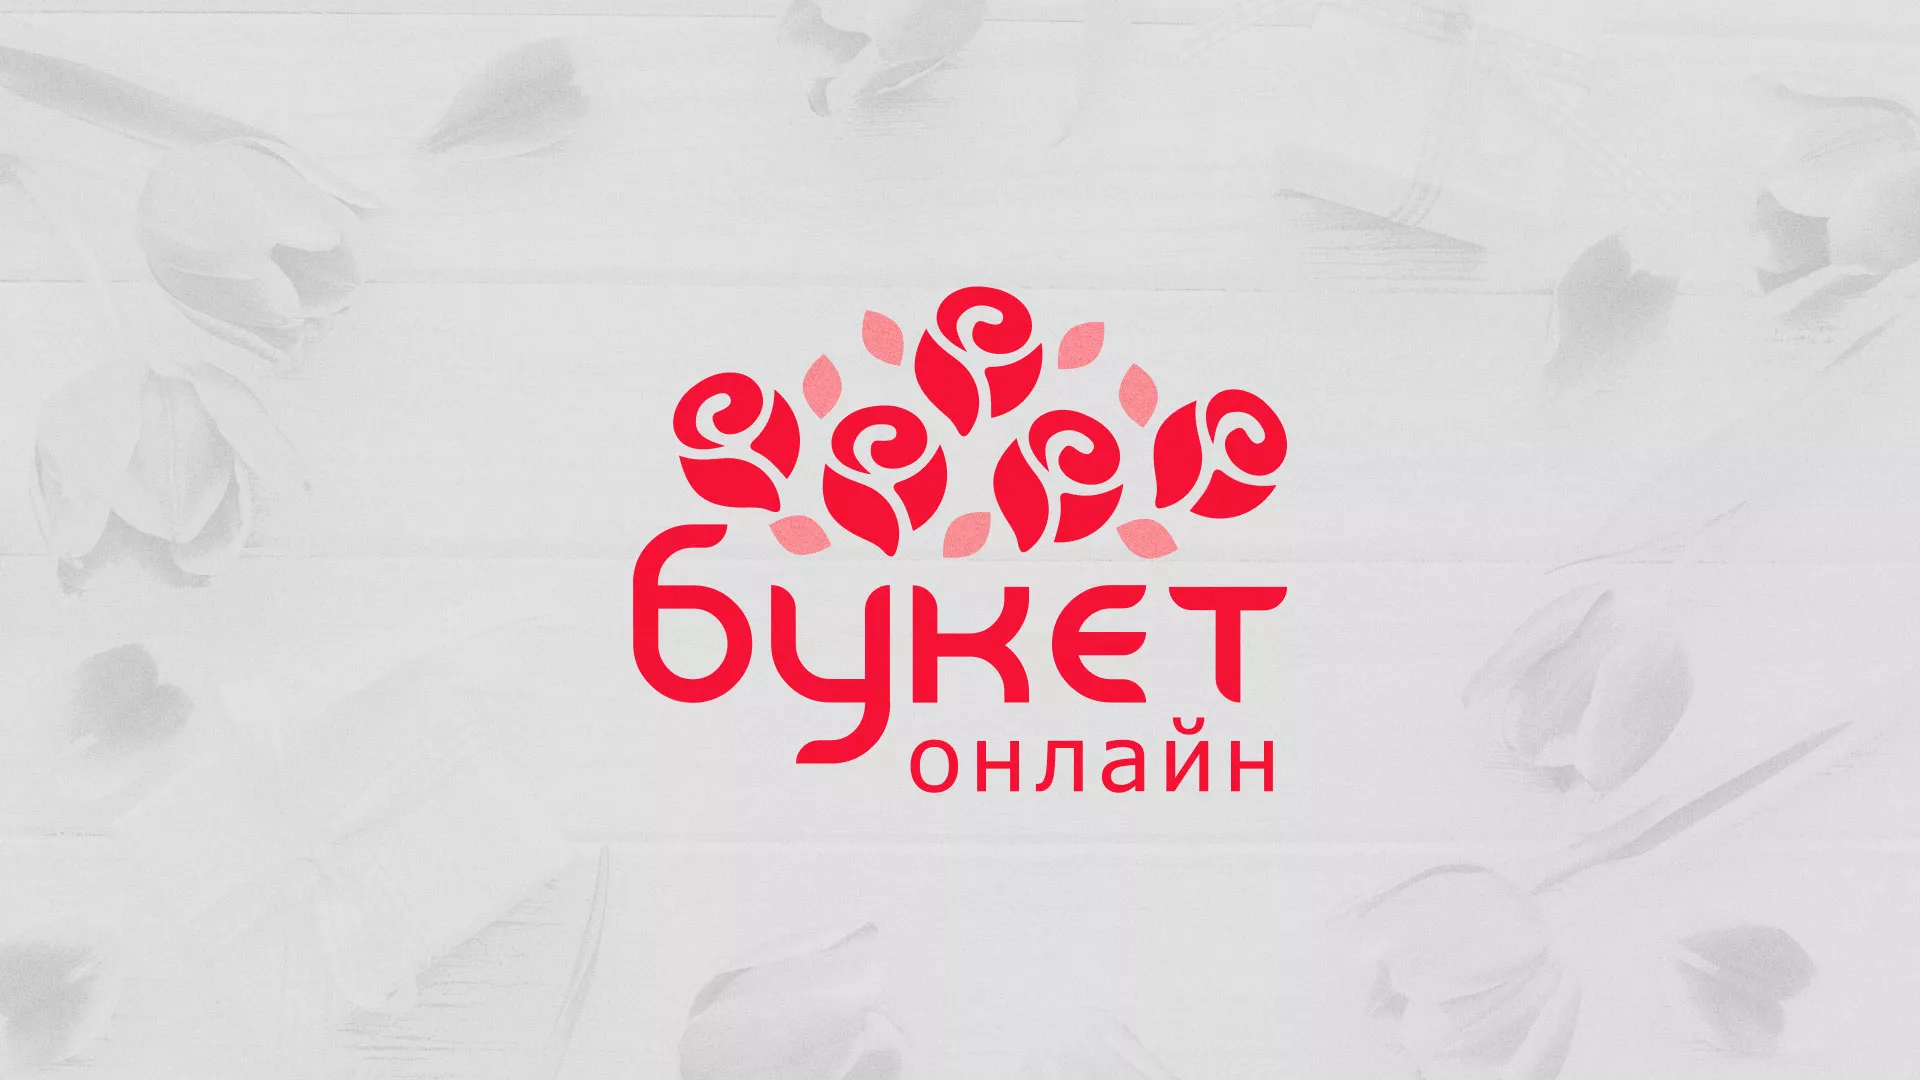 Создание интернет-магазина «Букет-онлайн» по цветам в Арсеньеве